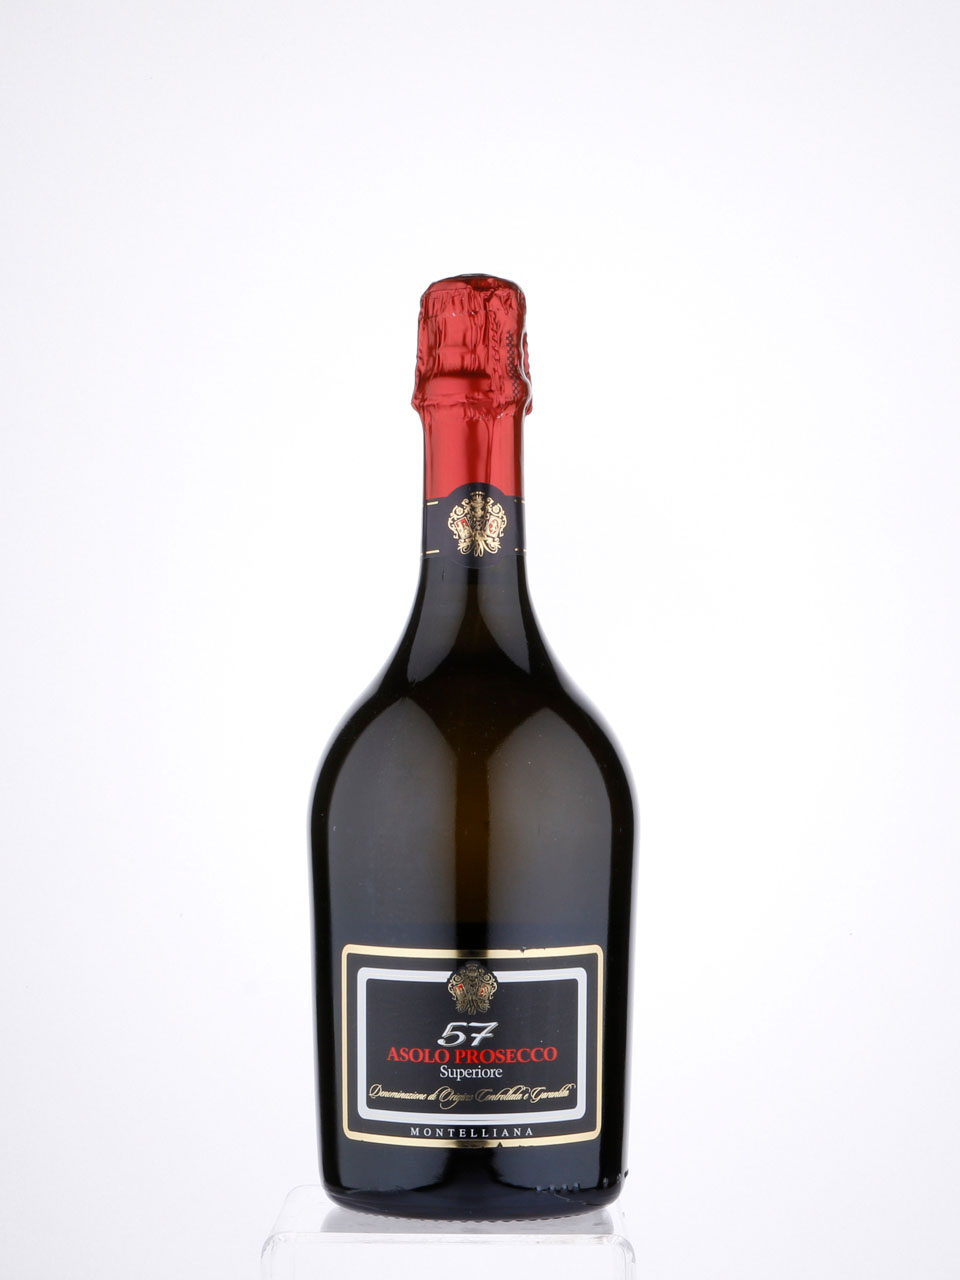 Вино игристое Montelliana 57 Asolo Prosecco superiore, 0.75 л. Asolo prosecco